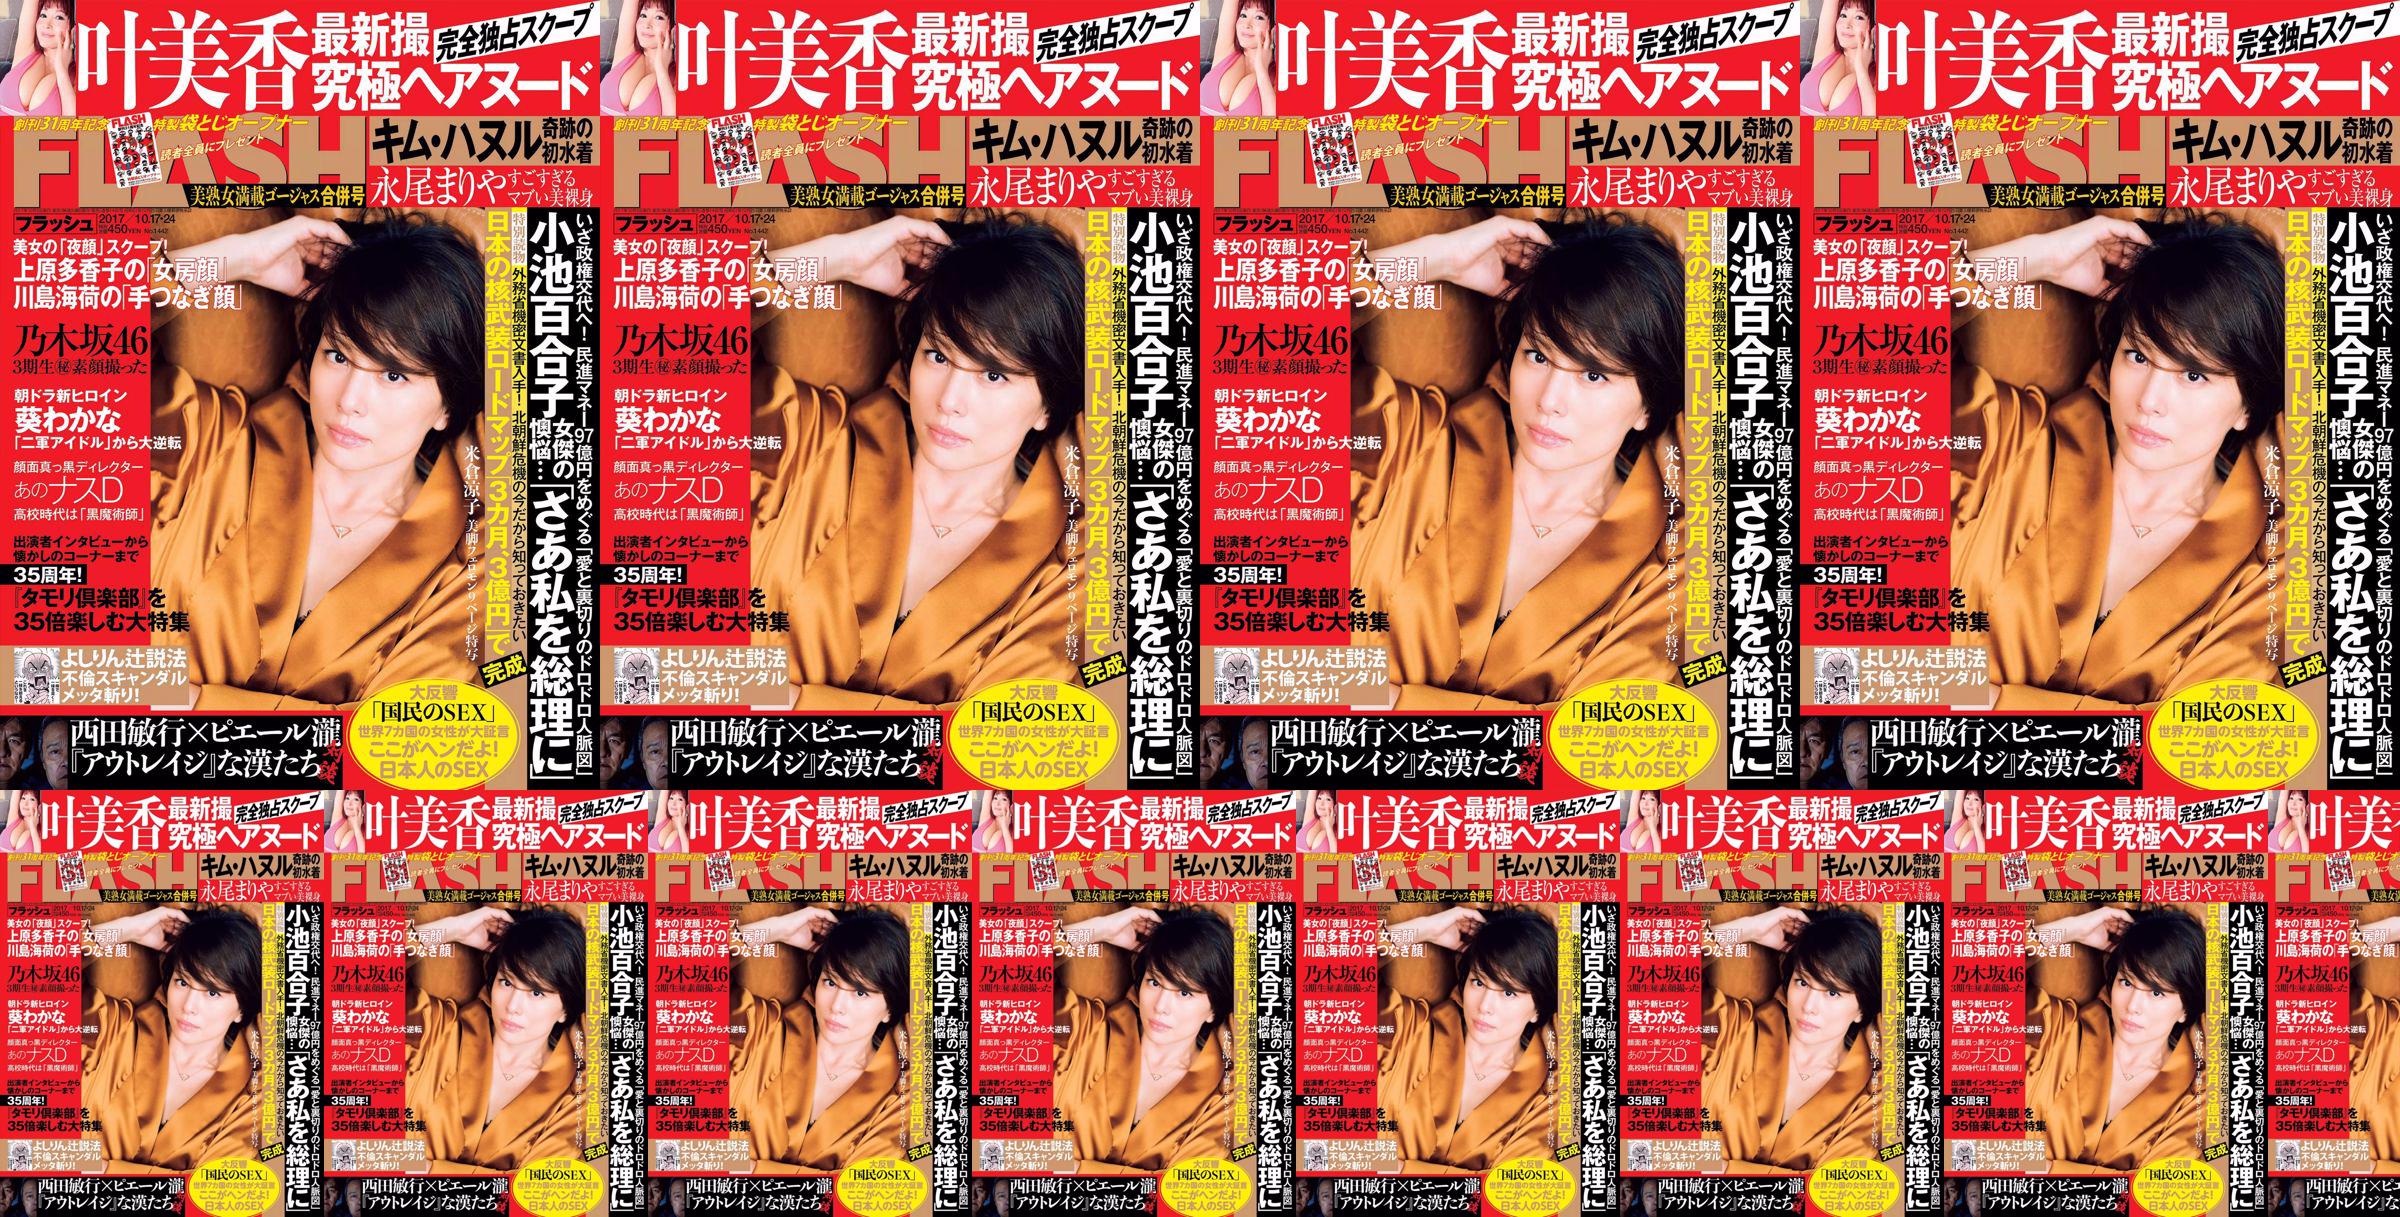 [FLASH] Yonekura Ryoko Ye Meixiang Tachibana Blumen Rin Nagao Rika 2017.10.17-24 Fotomagazin No.7aef9b Seite 4